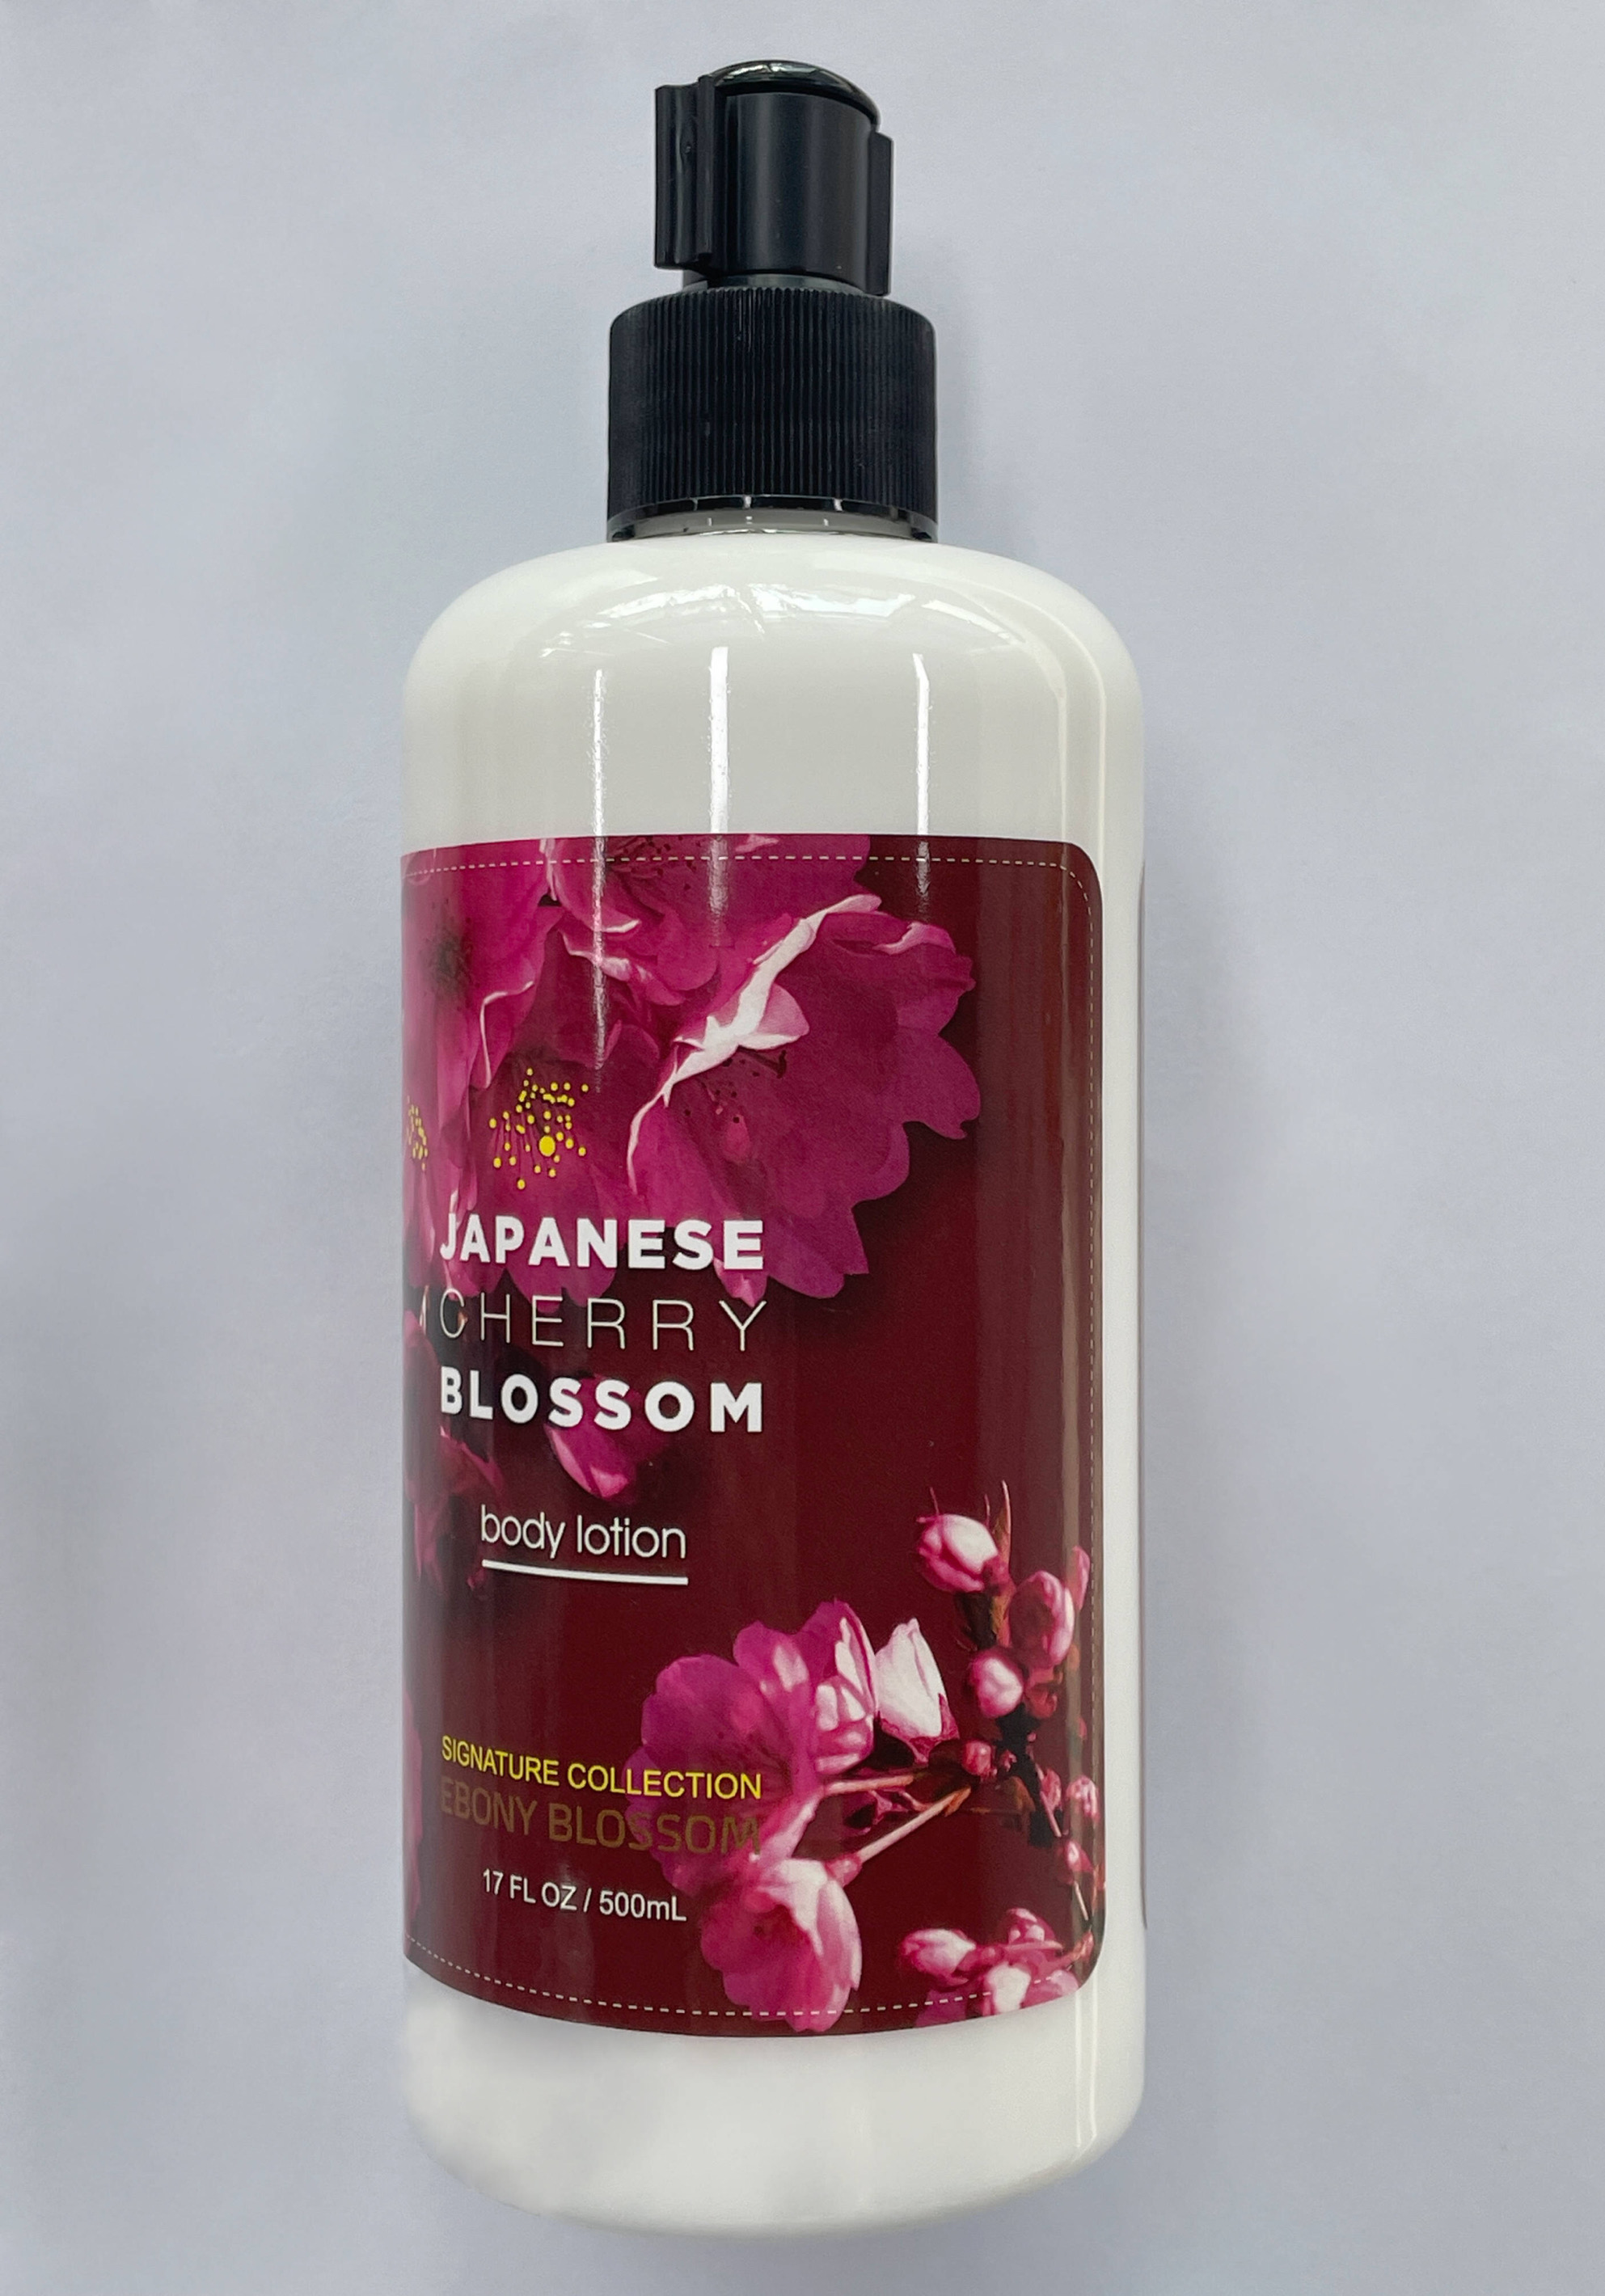 Ebony Blossom's Japanese Cherry Blossom Body Lotion